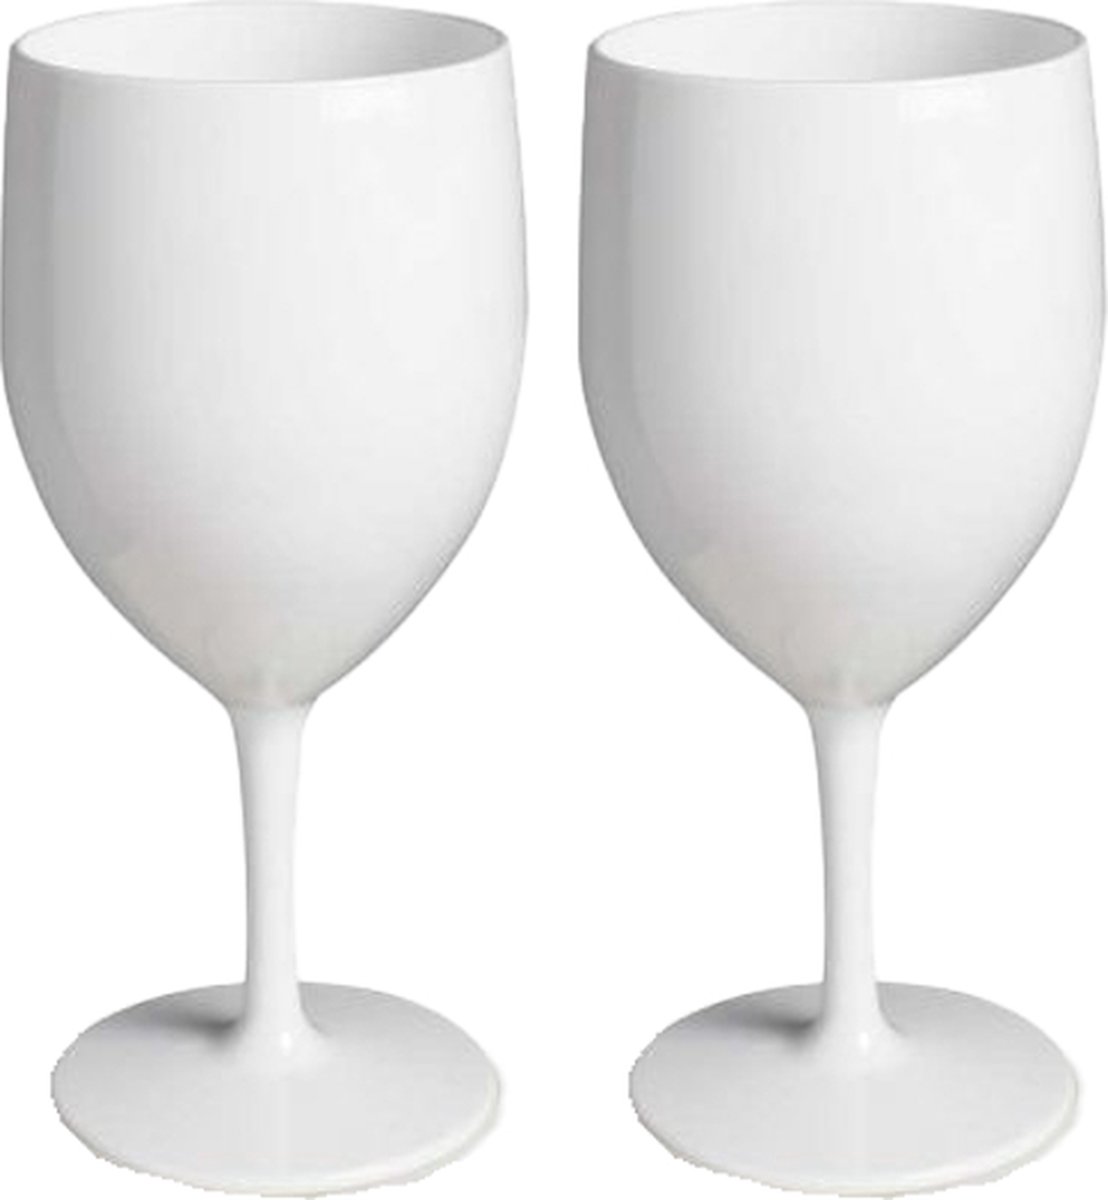 RBDRINKS Wijnglazen - Kunststof Wijnglazen - Wijnglazen Set - Witte Wijnglazen - Camping Glazen - Kunststof Glazen - Plastic Glazen - 27cl - Wit - 2 Stuks